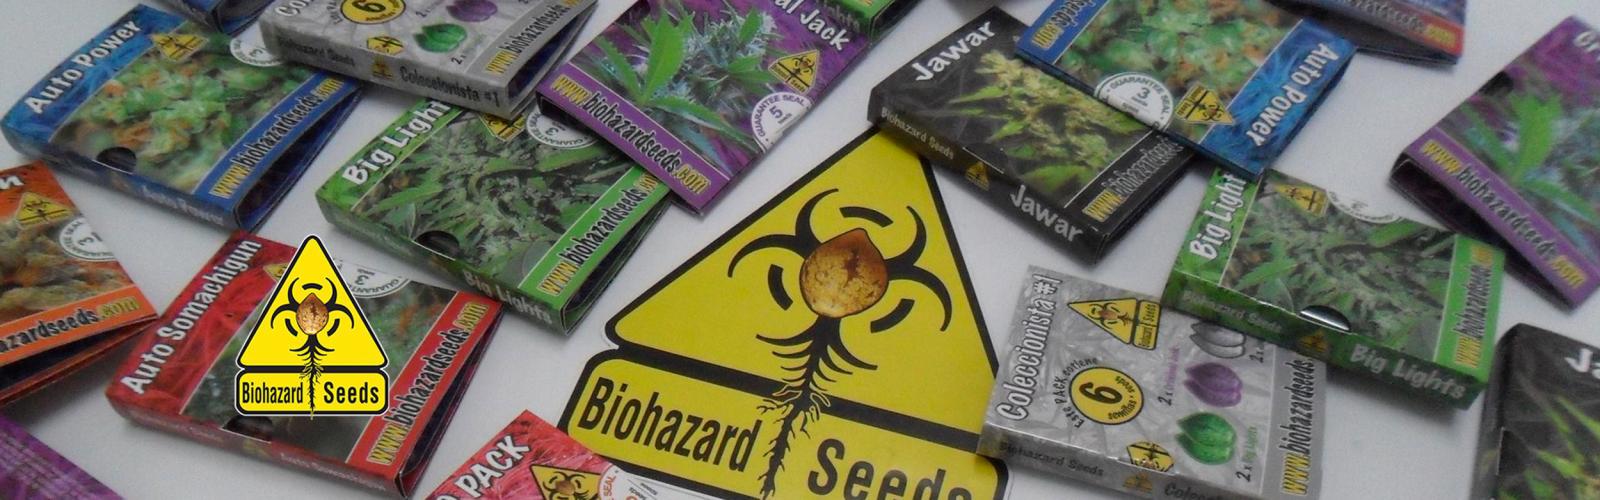 Semillas de Marihuana Biohazard Seeds